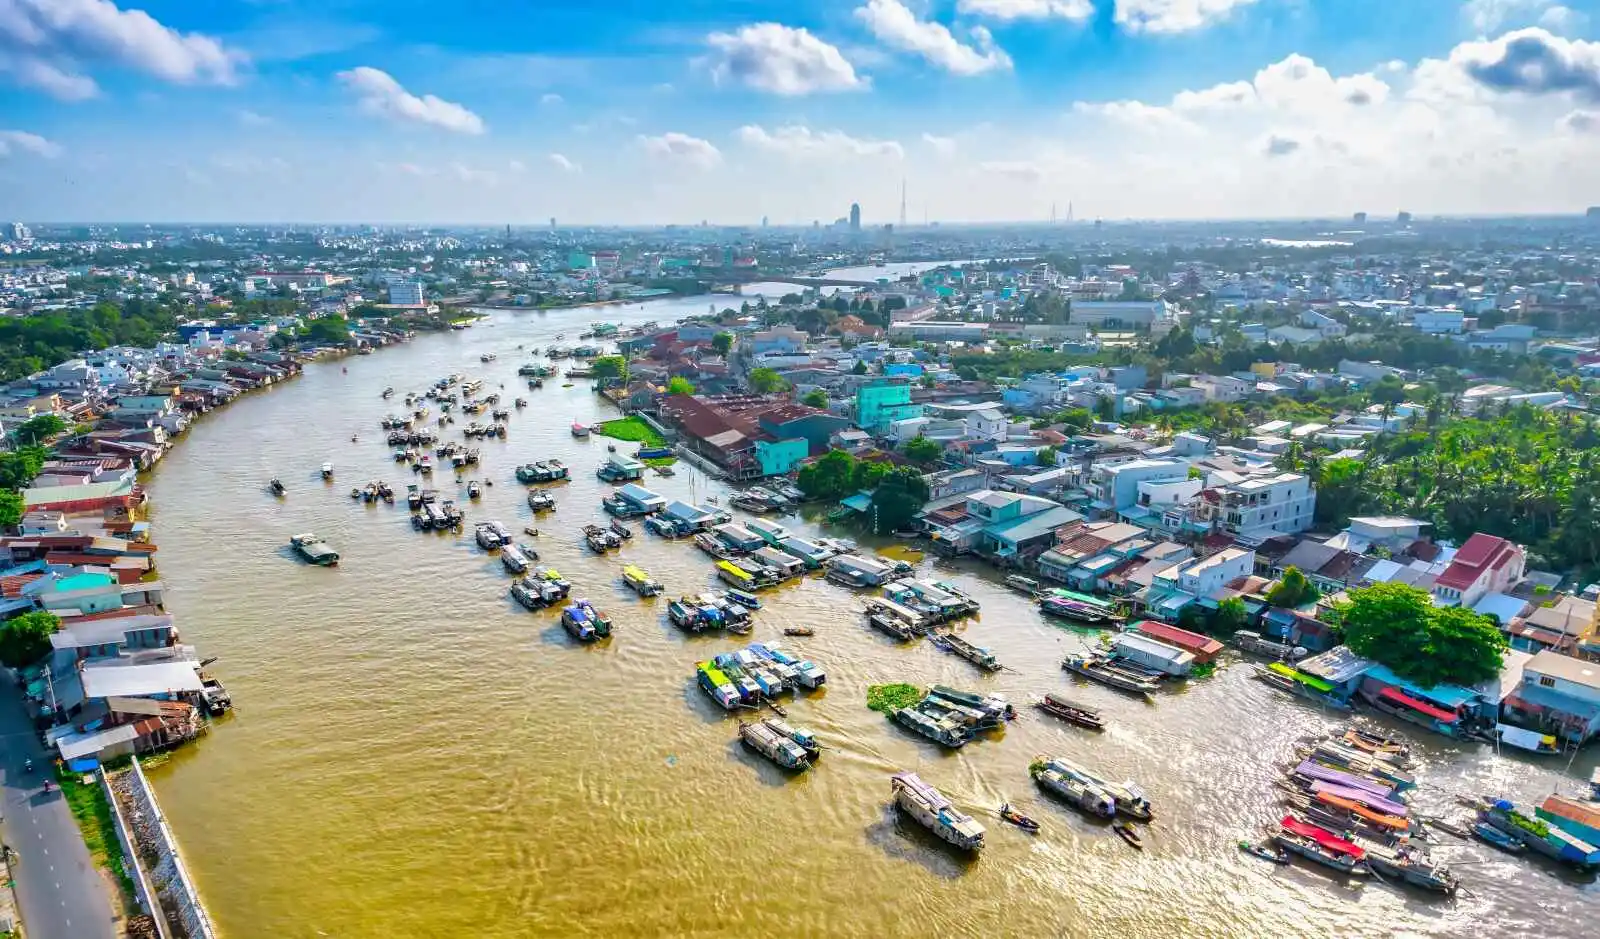 Marché flottant, Cai Rang, Vietnam